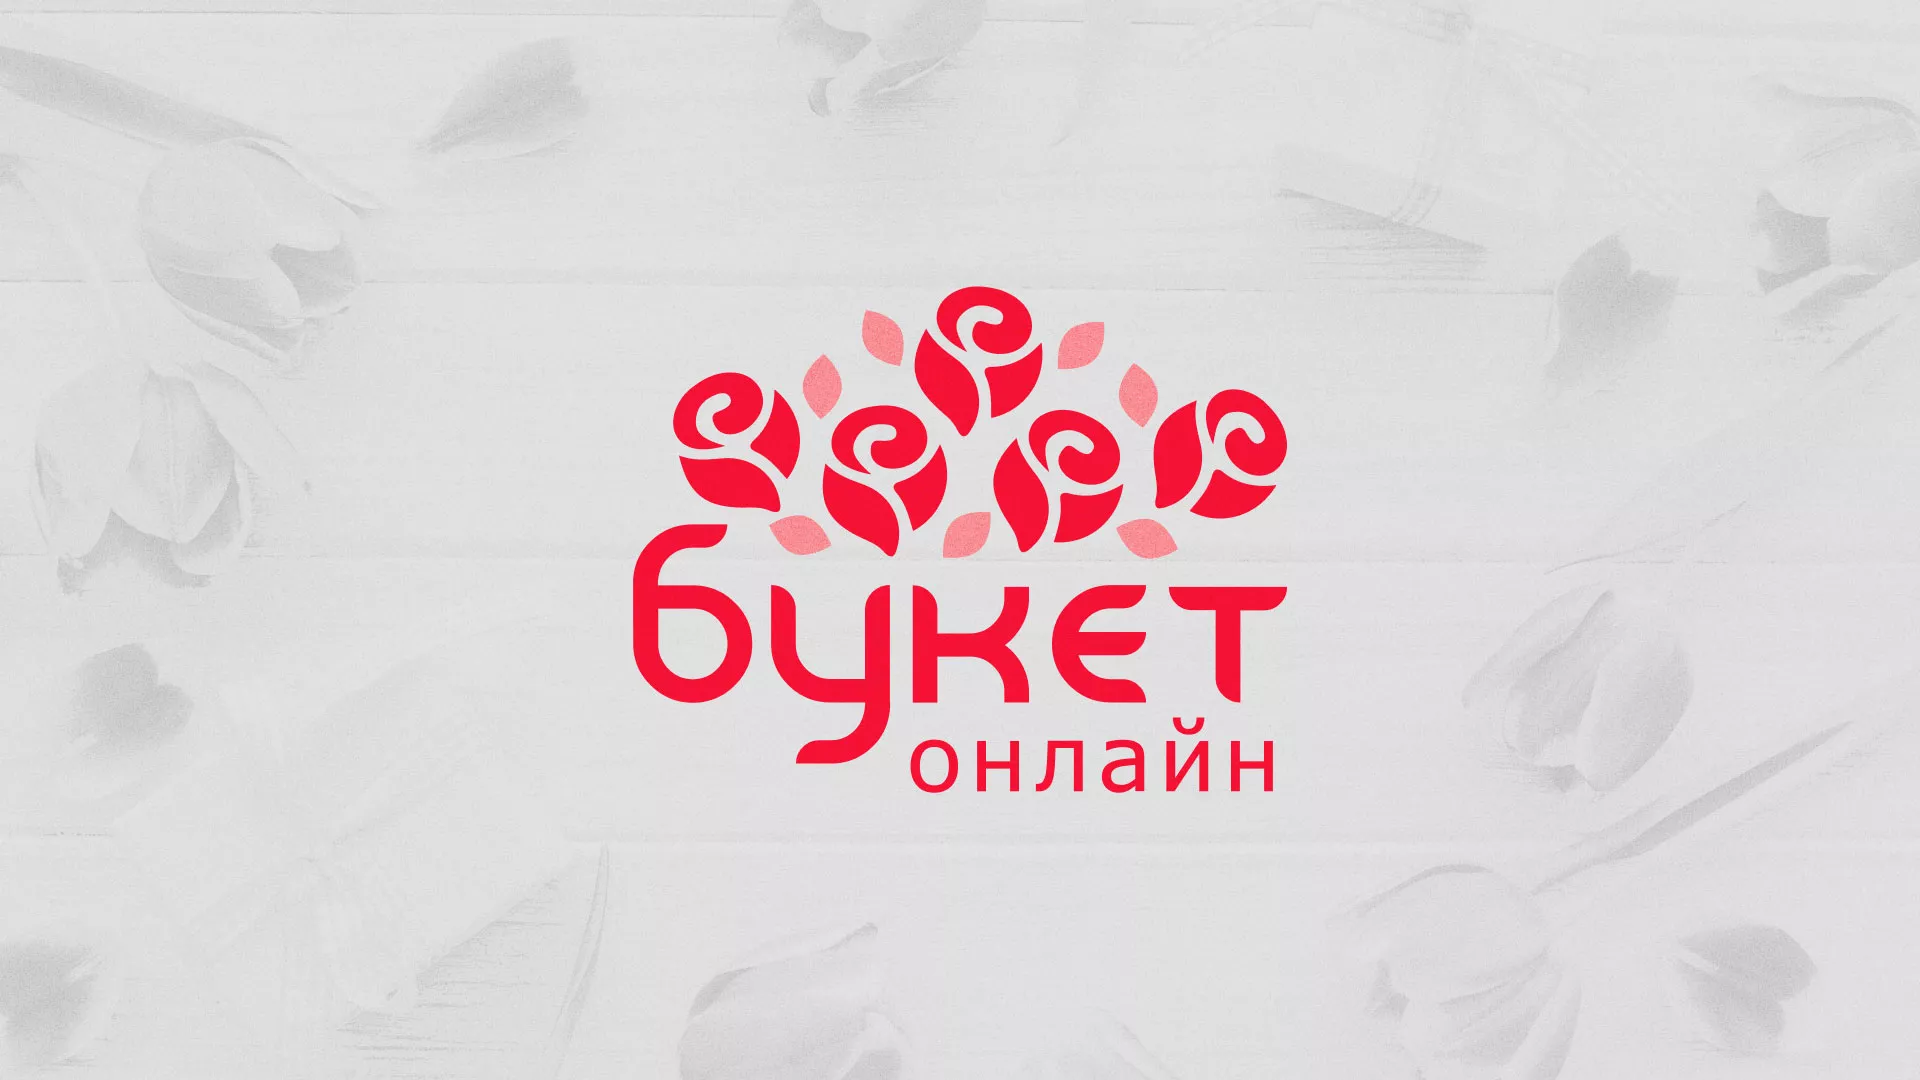 Создание интернет-магазина «Букет-онлайн» по цветам в Михайловске